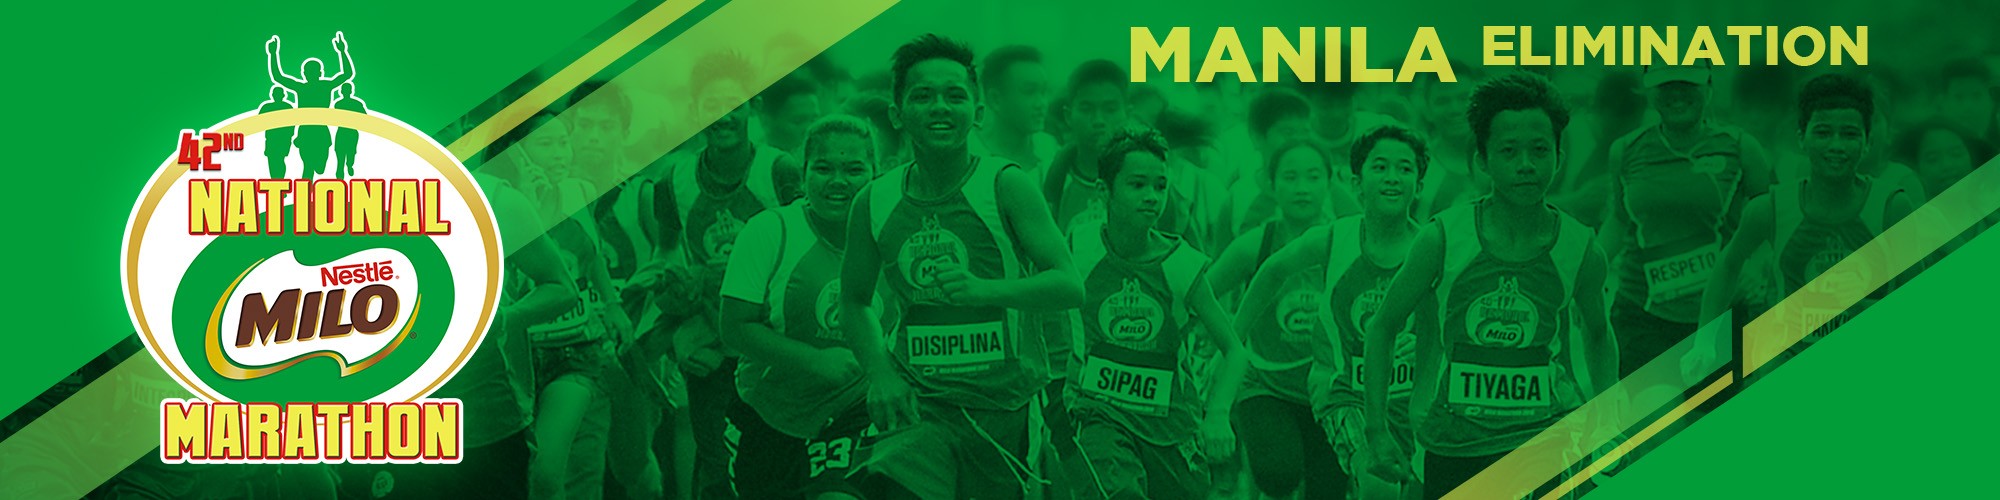 42nd National MILO Marathon - Manila Elimination